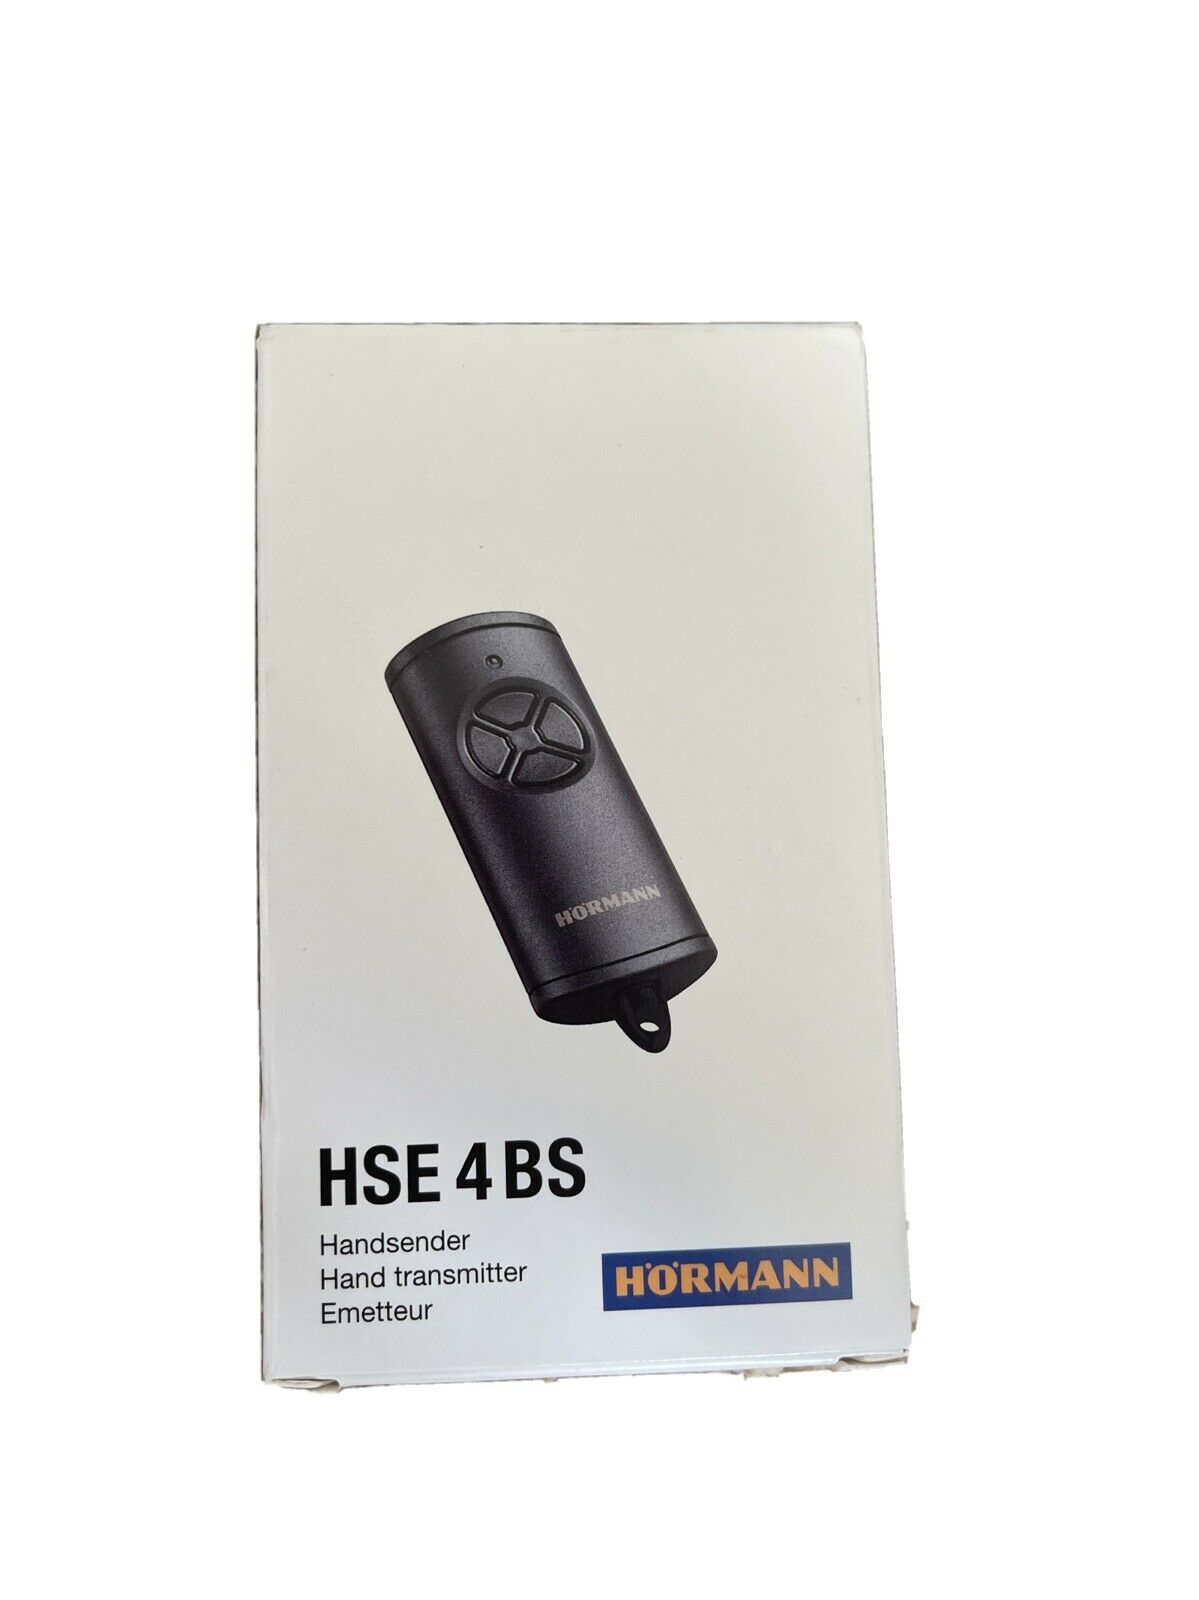 Hormann HSE 4 BS 4511736 hand transmitter, black